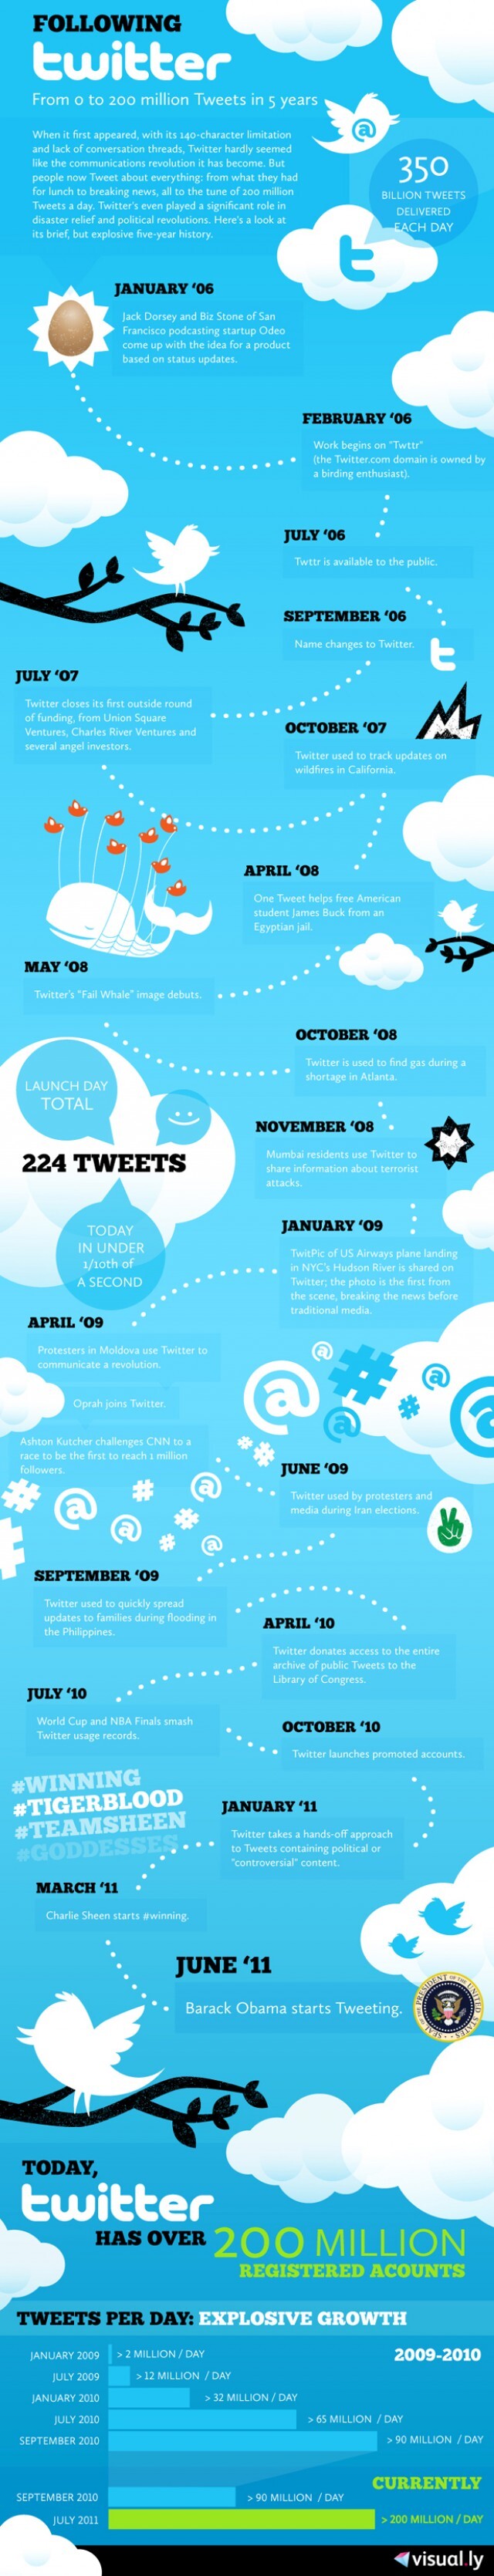 infografia-twitter-historia